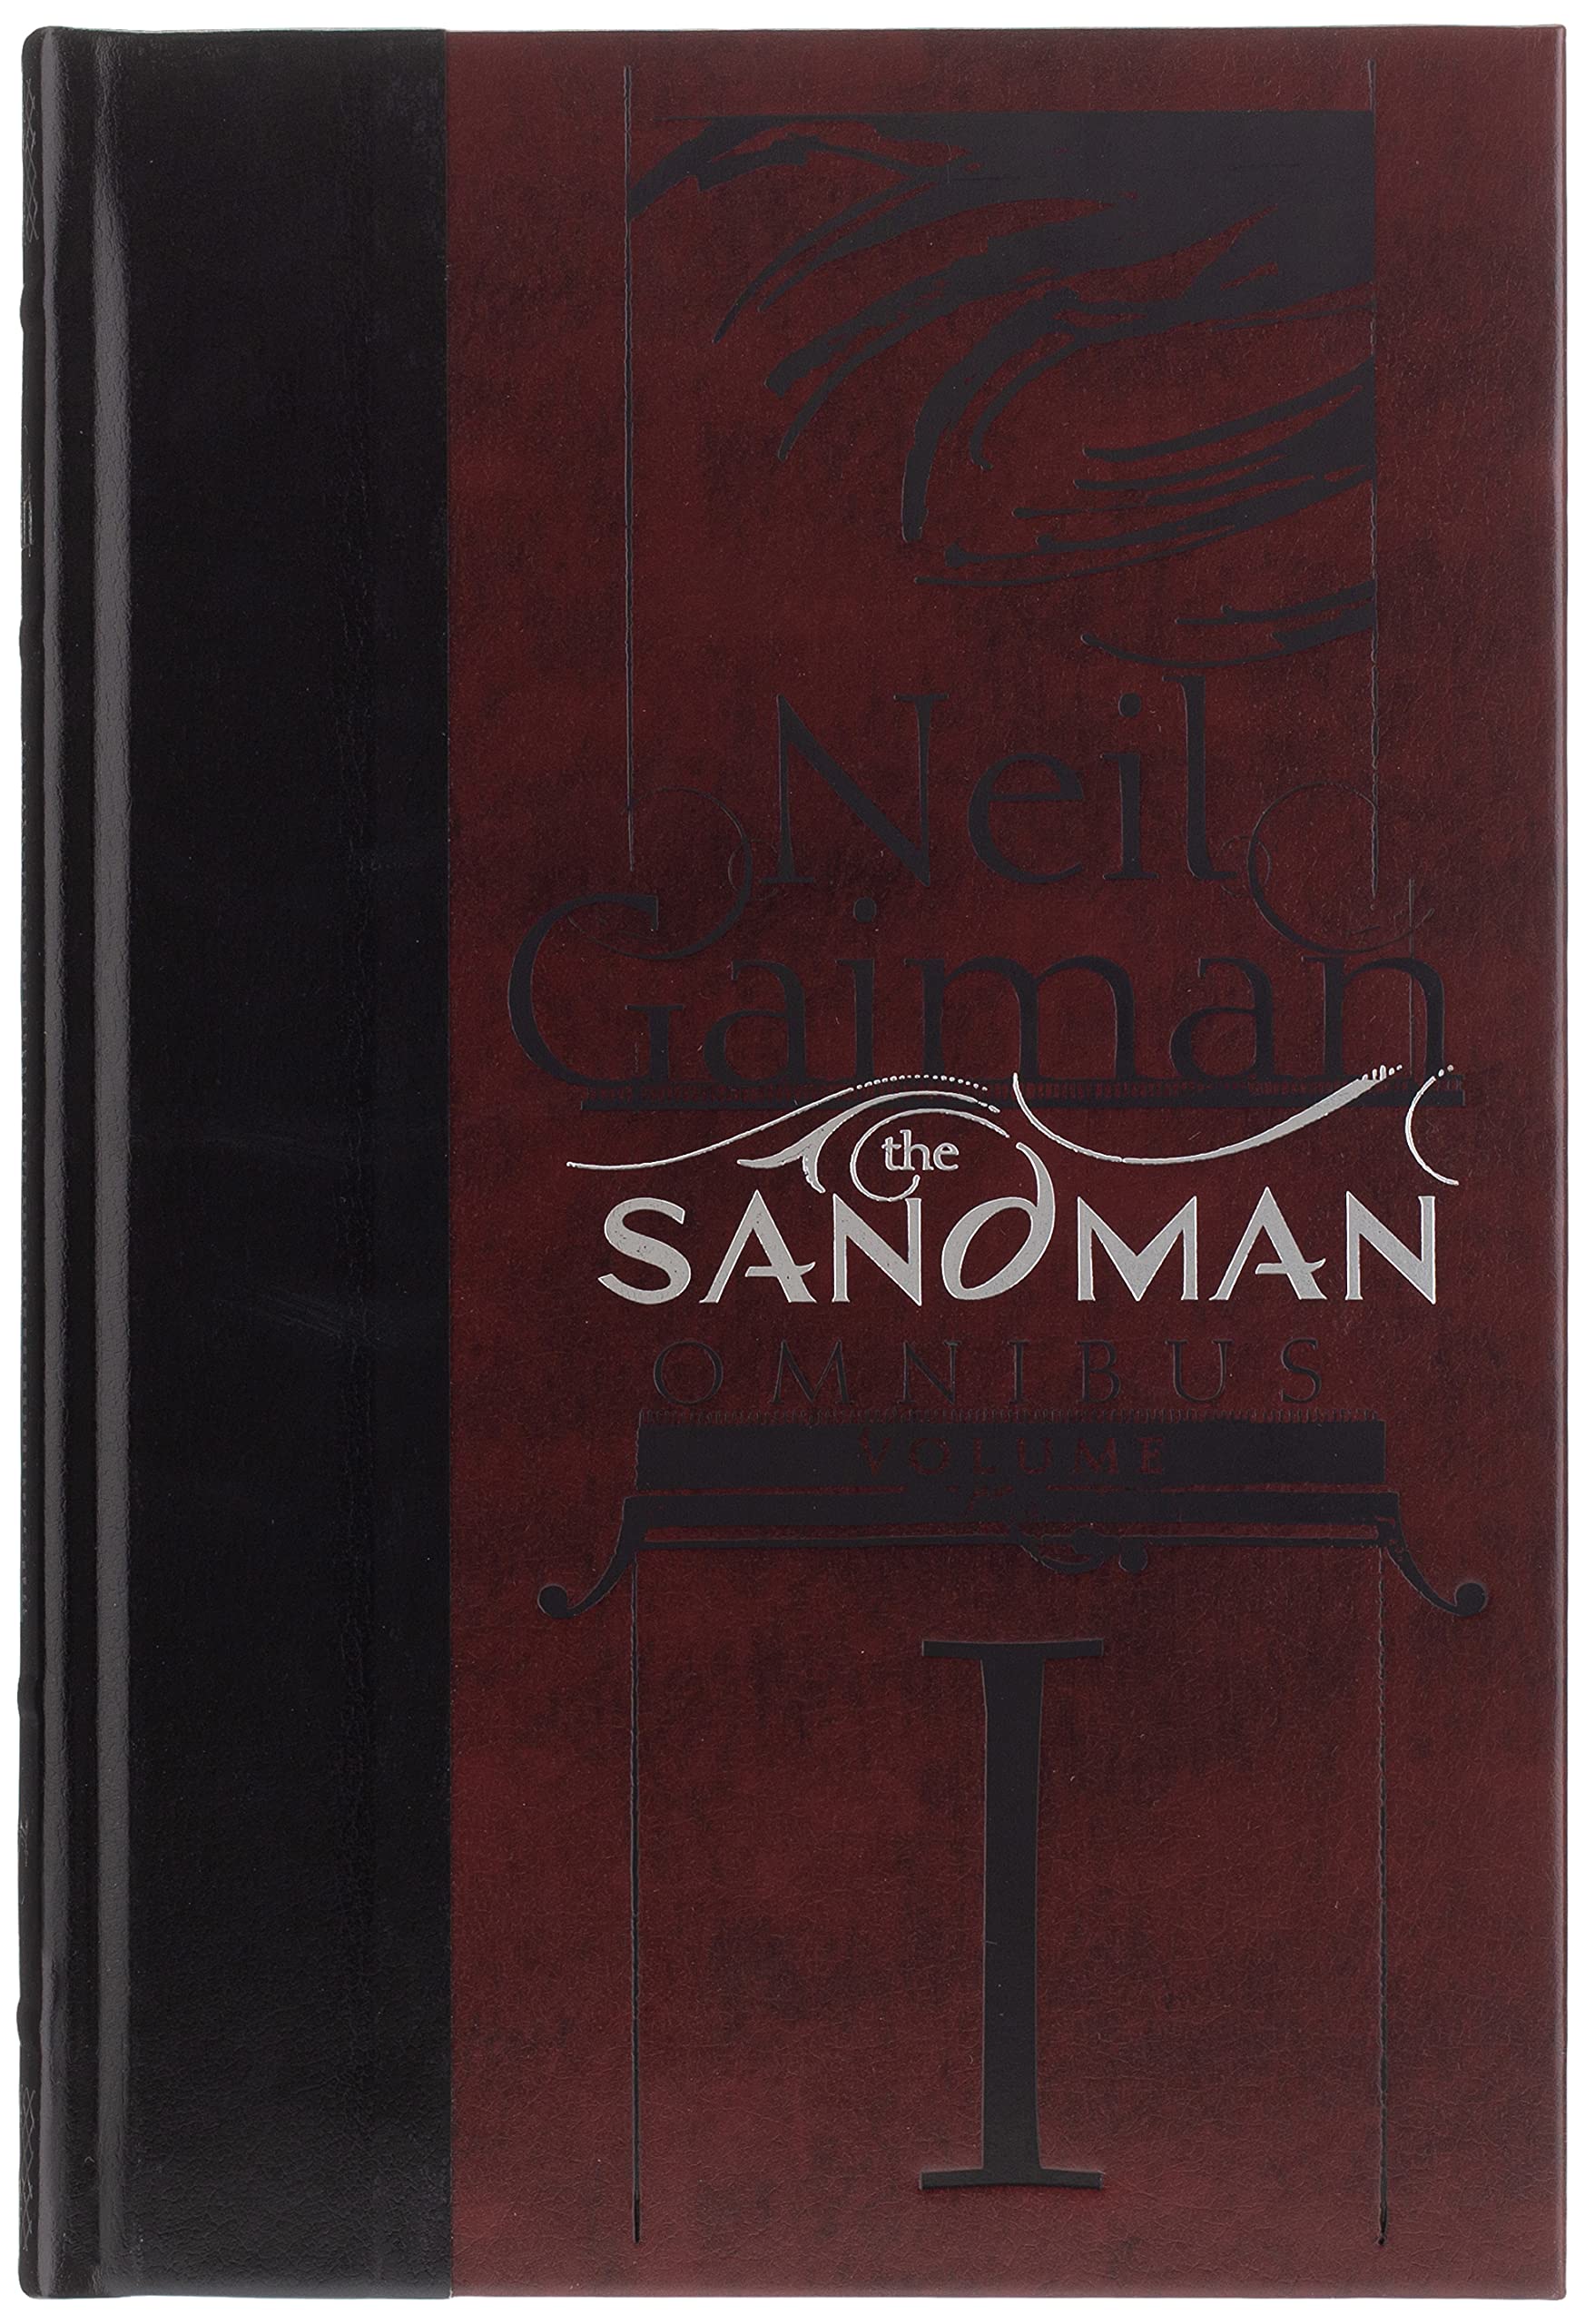 Sandman Omnibus Hardcover Volume 1 (Mature)